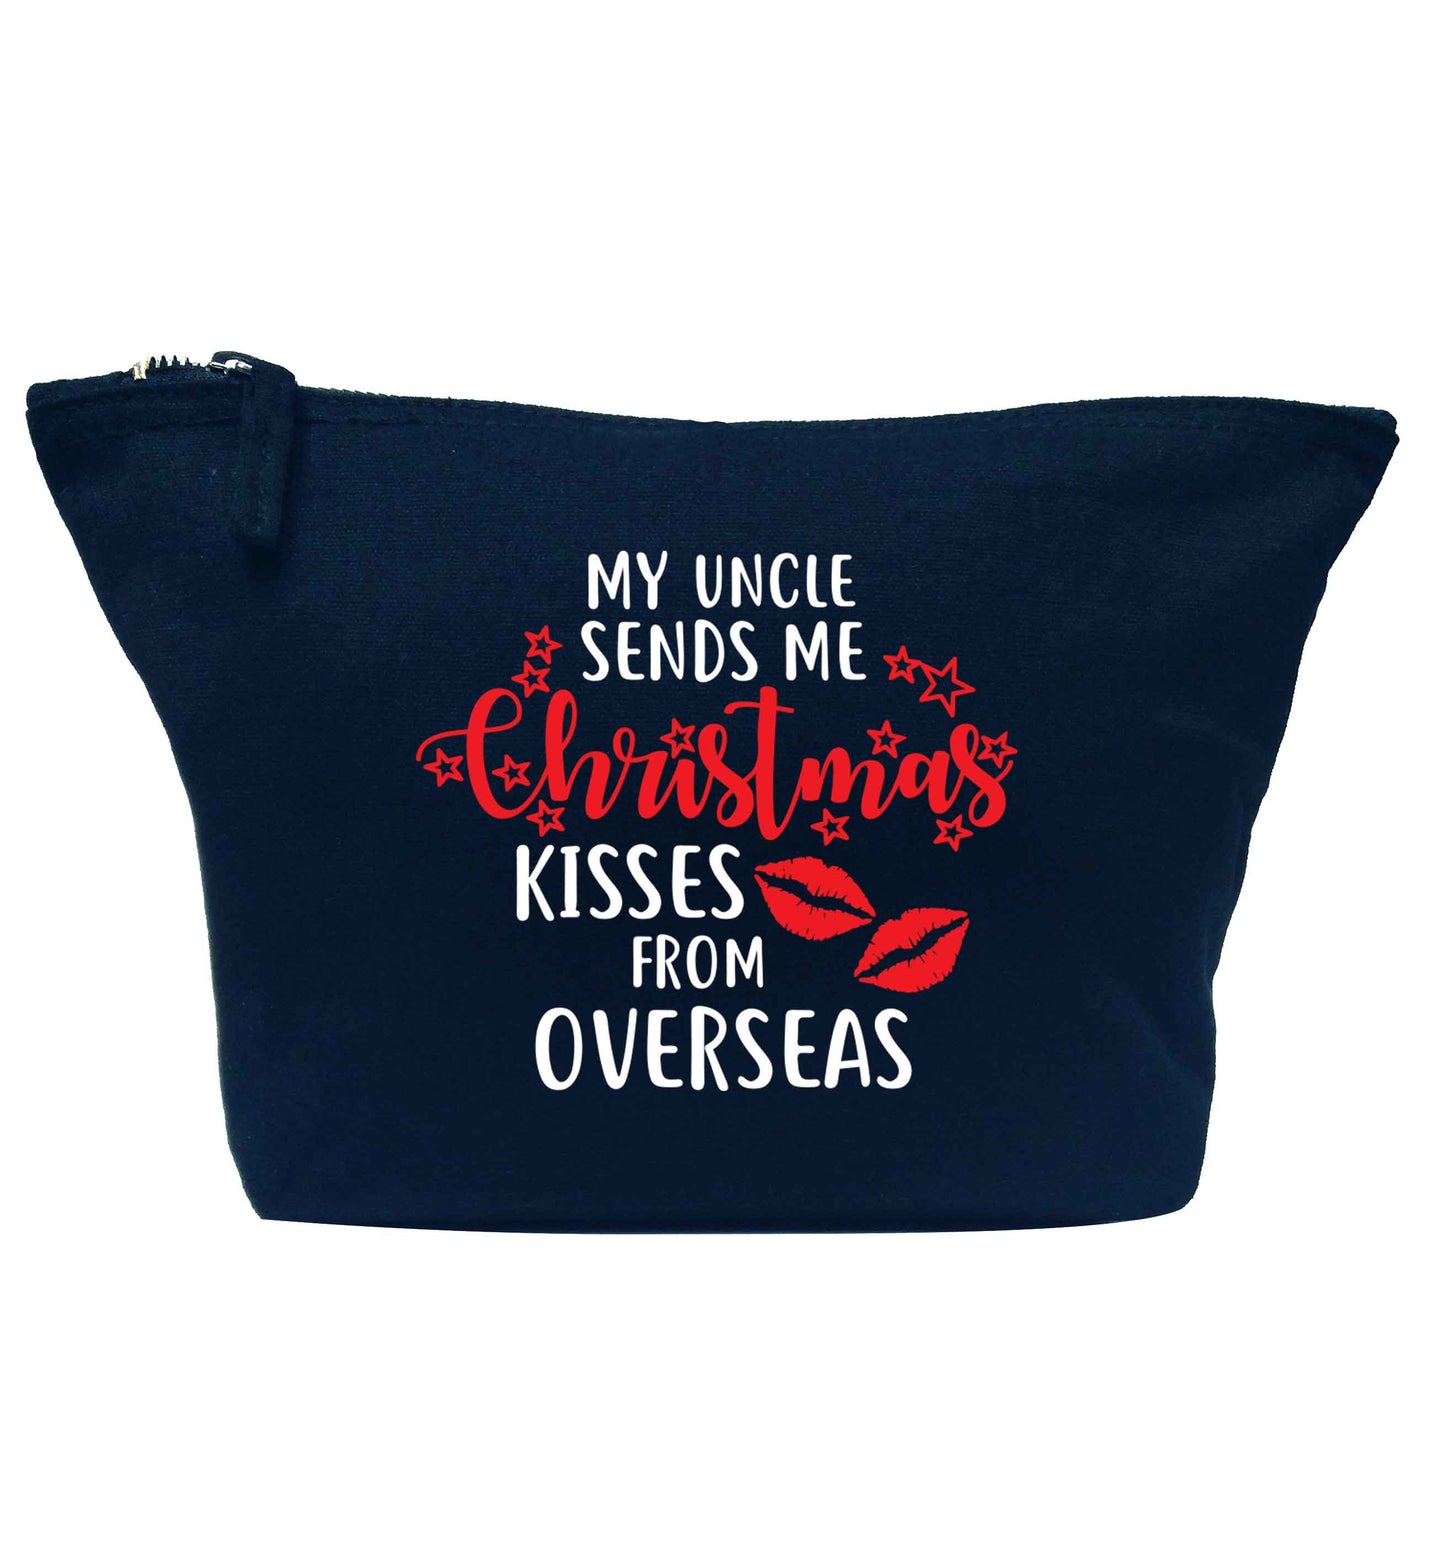 Brother Christmas Kisses Overseas navy makeup bag